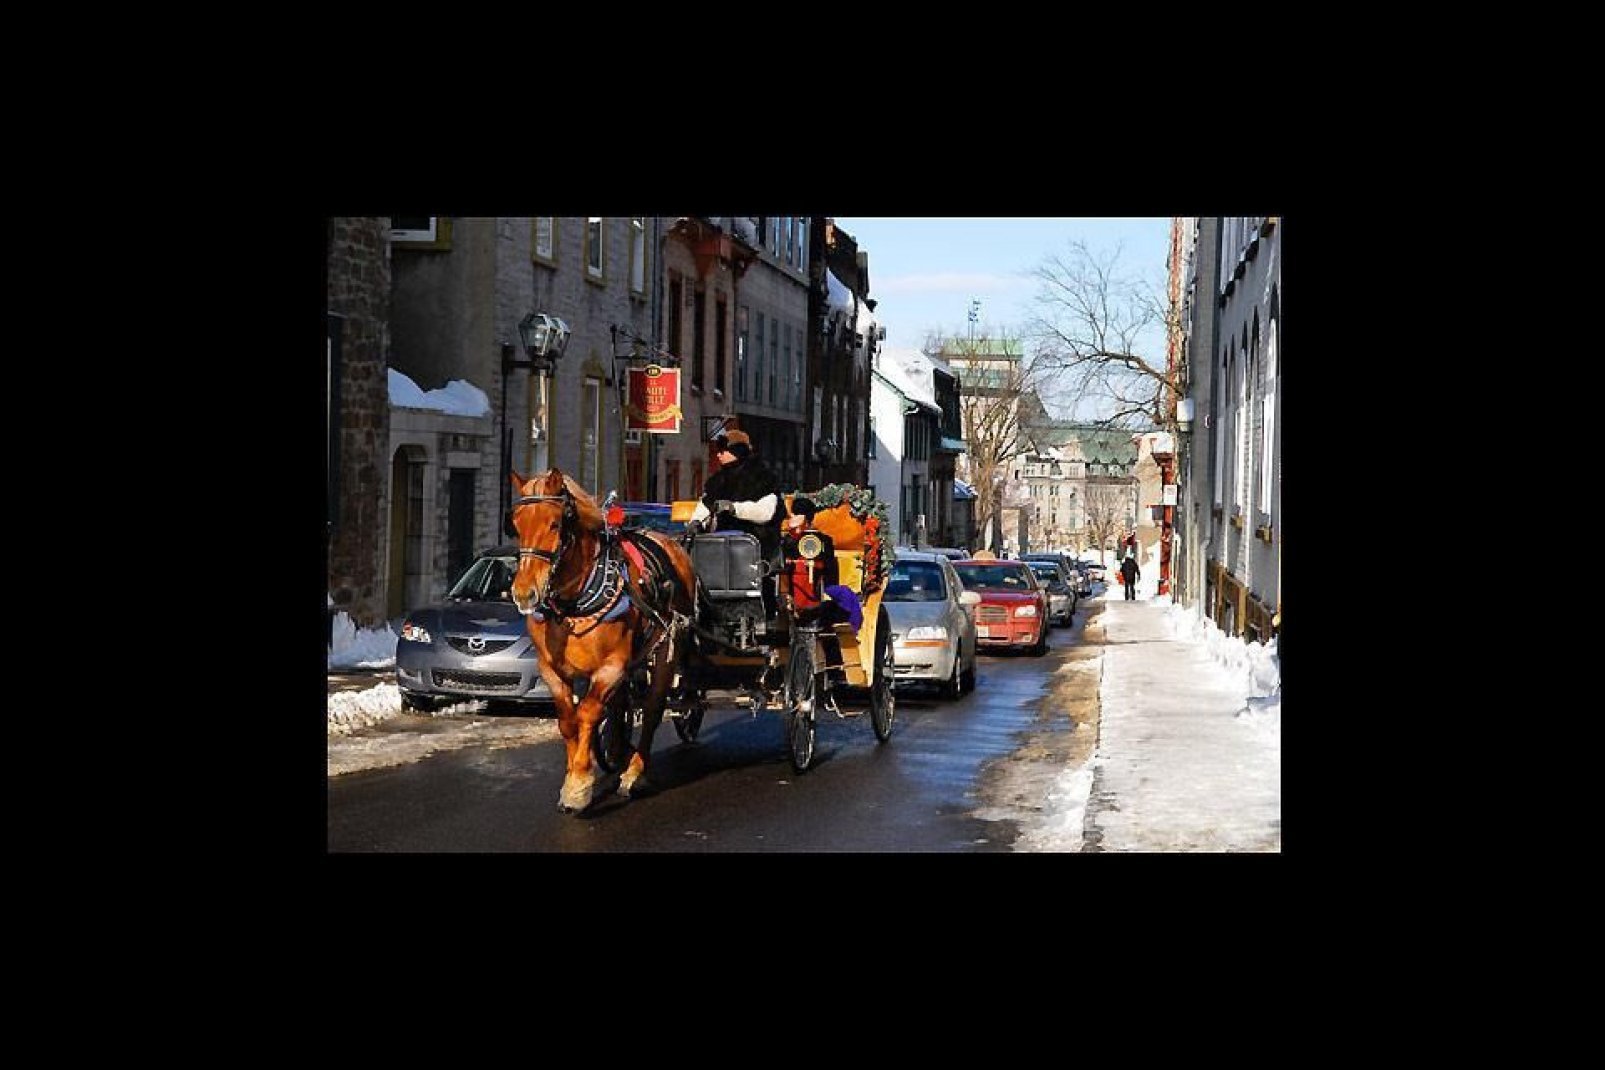 Piuttosto che prendere l'auto, scegliete di fare una passeggiata in carrozza nel centro storico di Québec: è come fare un salto nel passato.